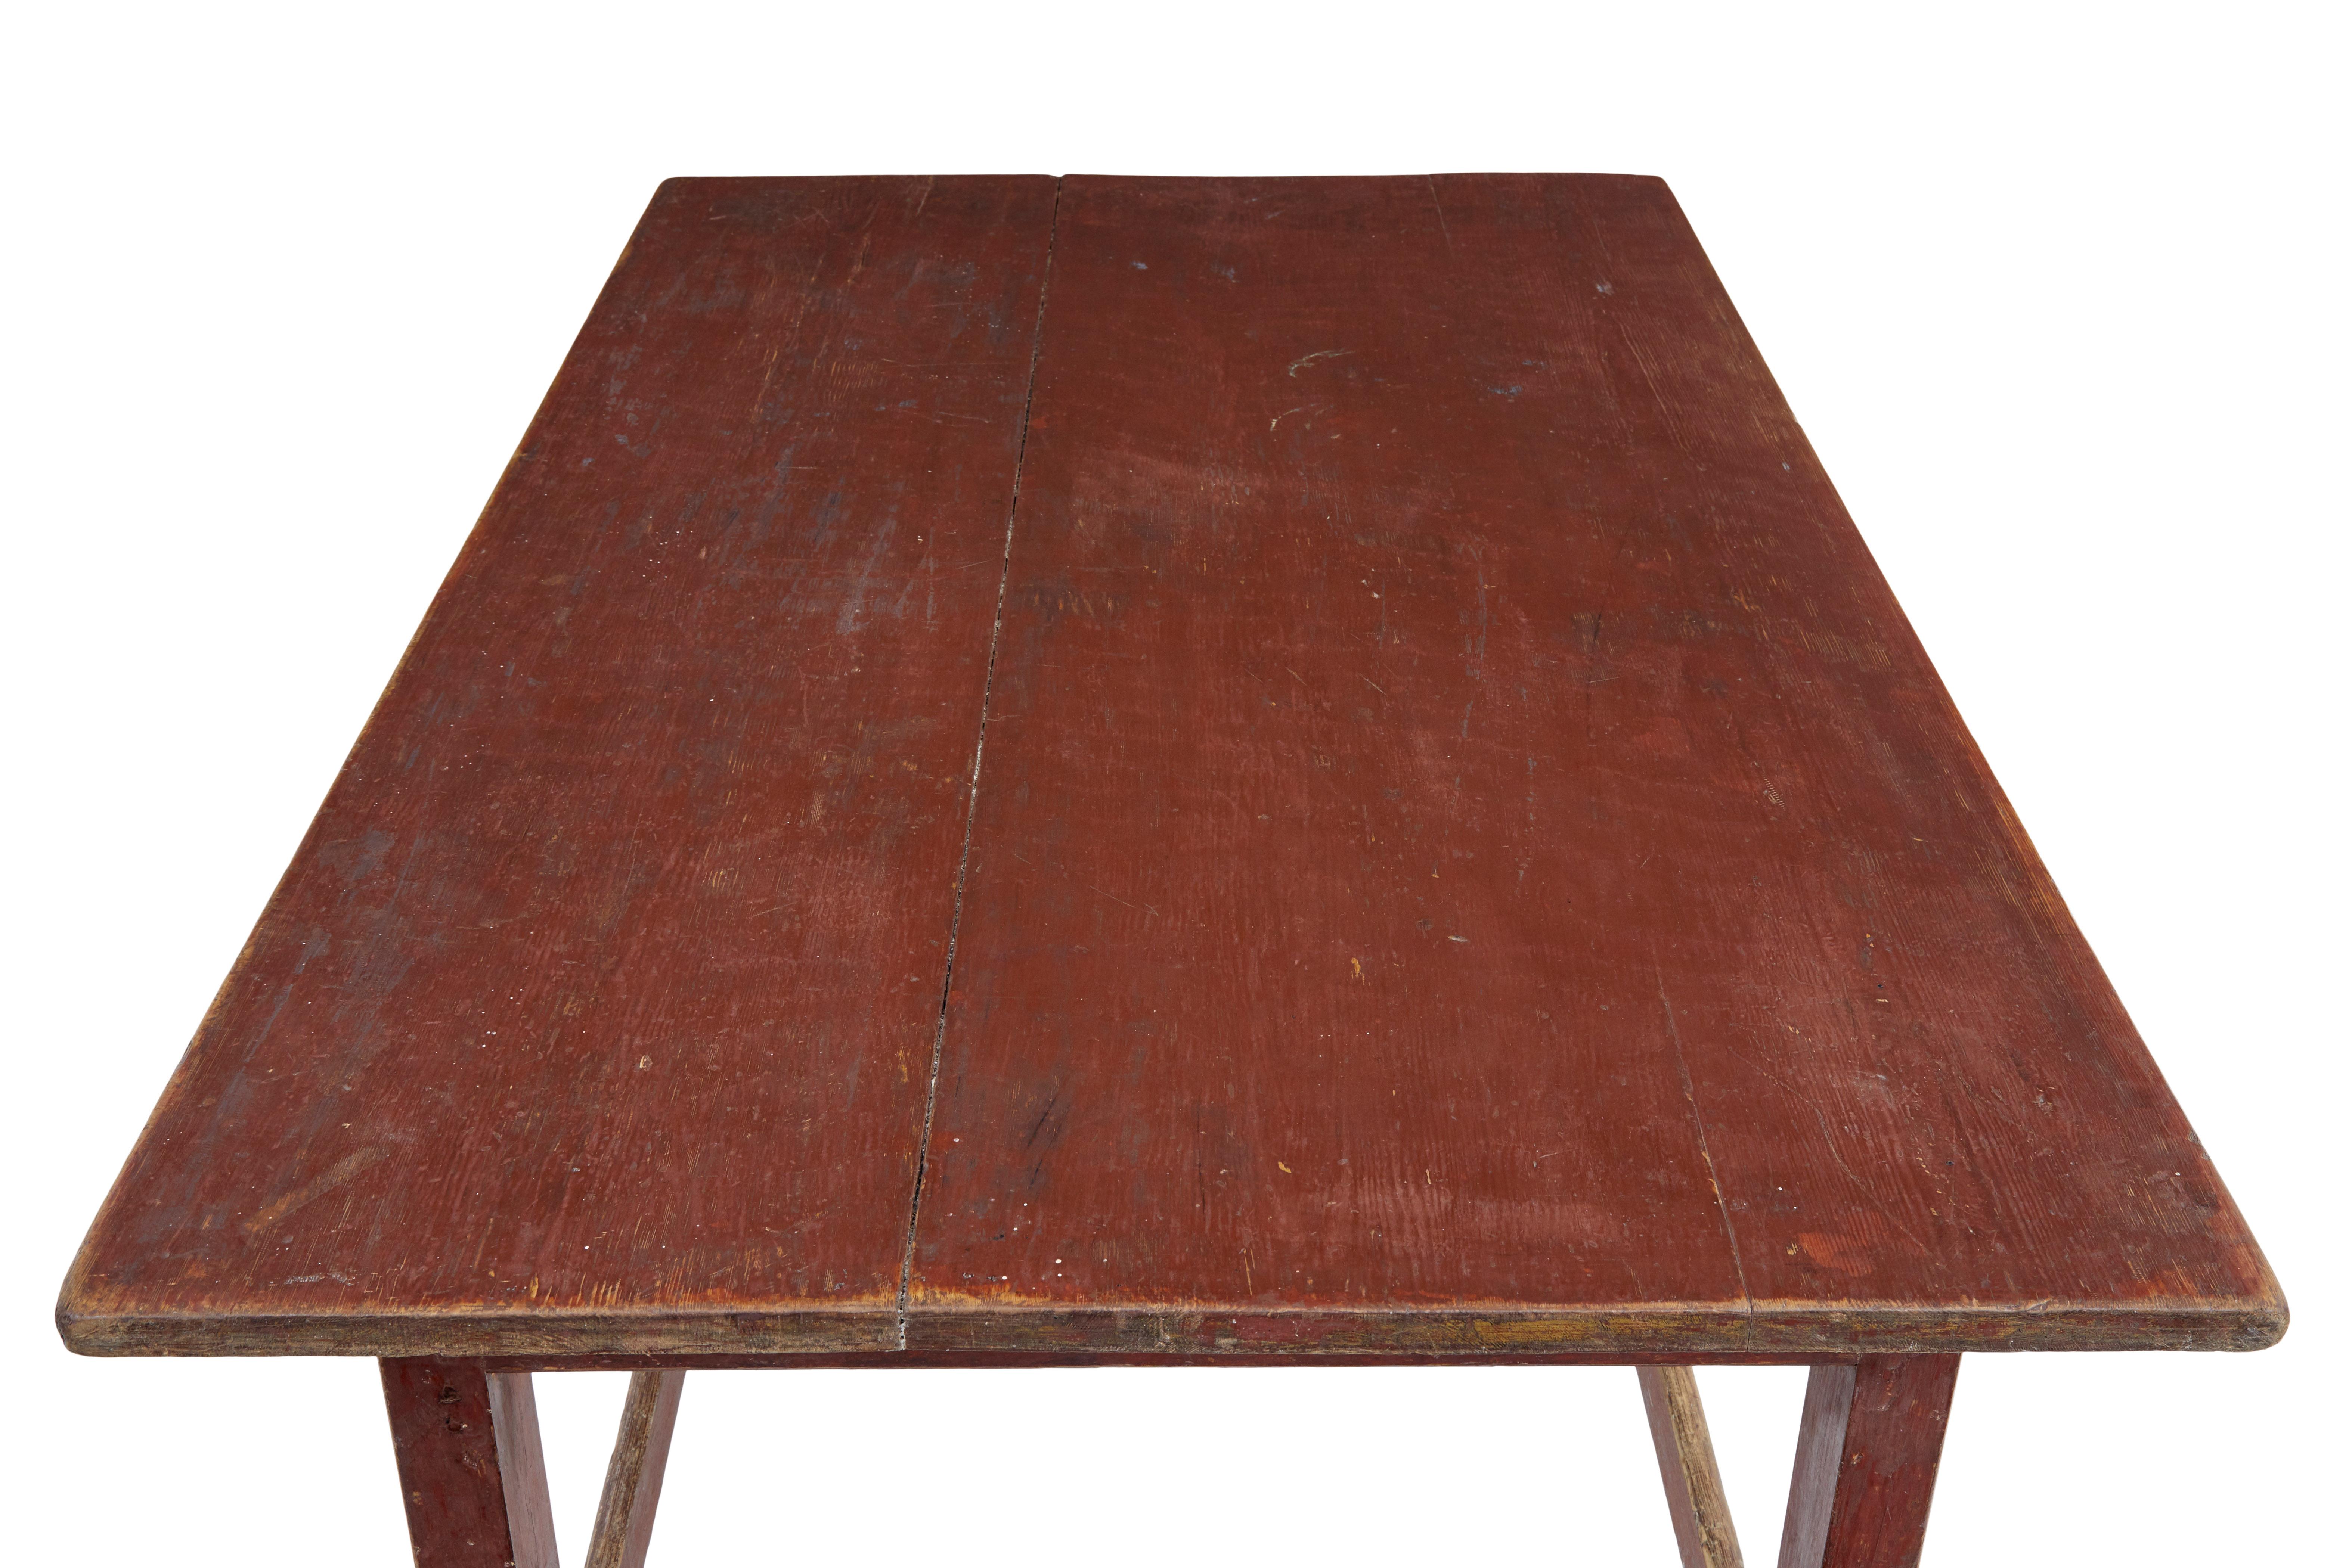 Großer bemalter Tisch aus skandinavischer Kiefer aus dem 19. Jahrhundert, ca. 1870.

Handbemalter Arbeitstisch mit einer 3-Bohlen-Platte.  Gerades Fußgestell mit umlaufender Streckung oben und unten.

Ideal für den Einsatz auf dem Schreibtisch oder